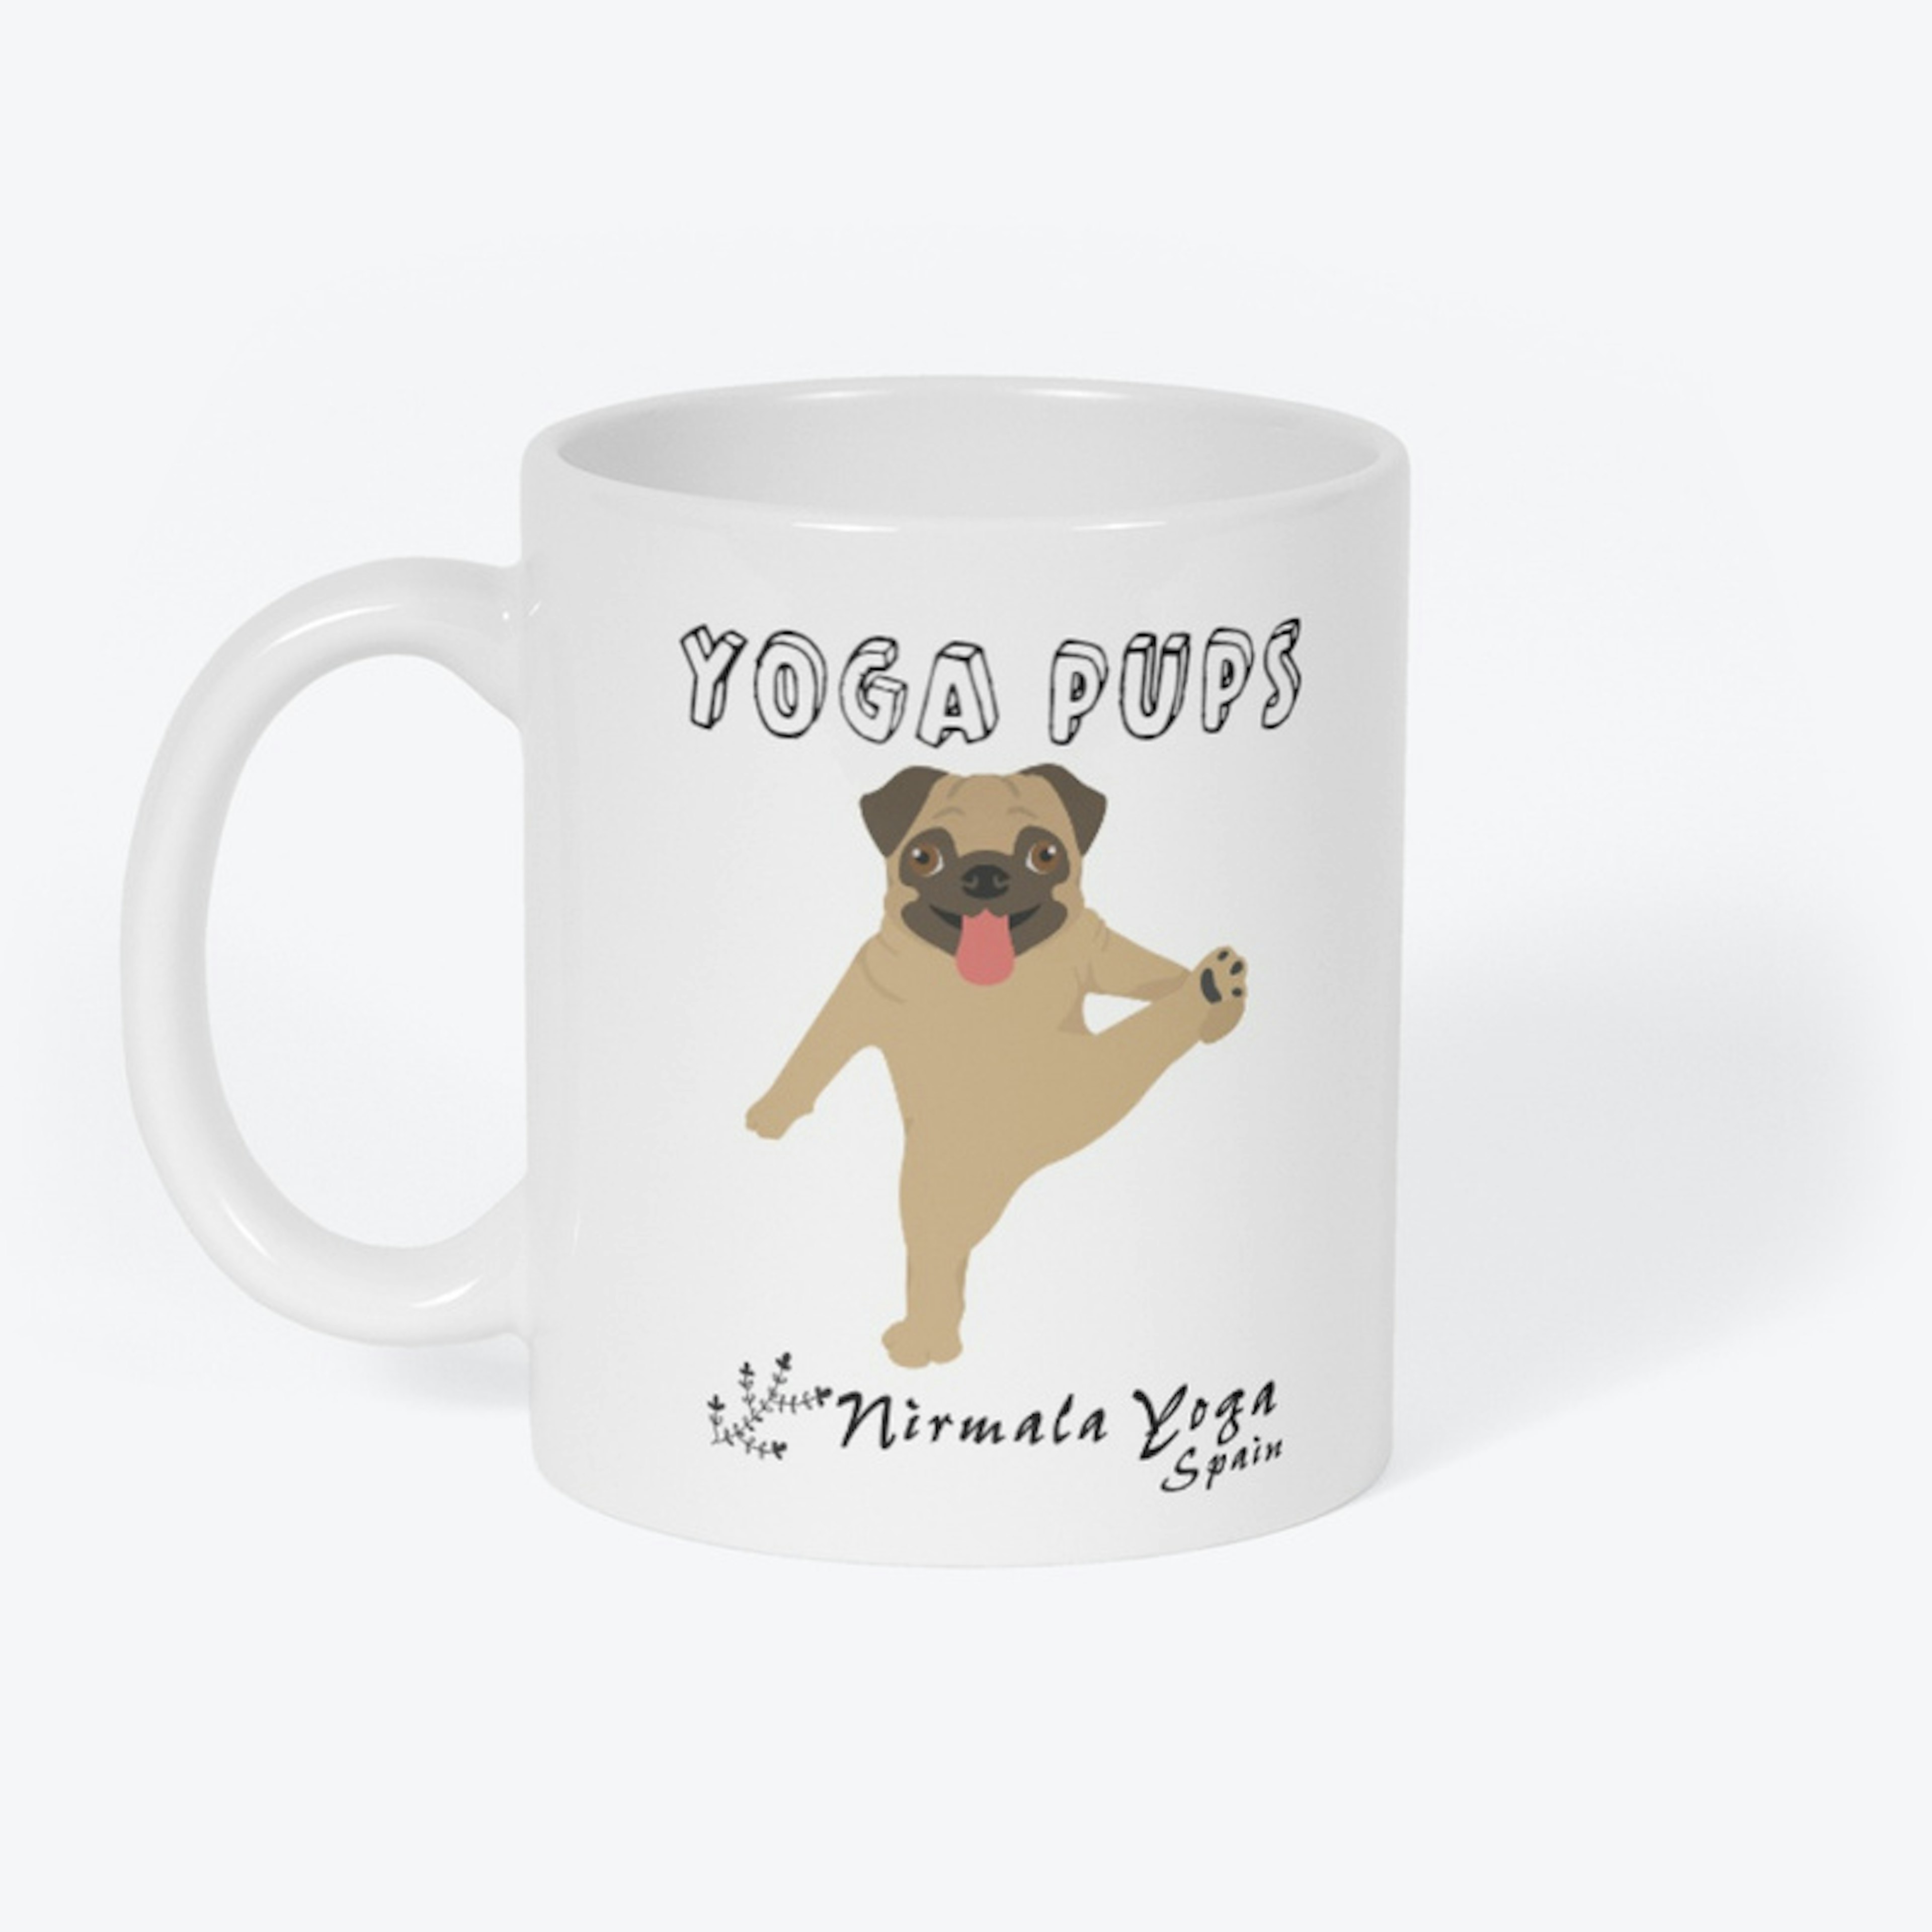 Pug "Yoga Pups" Mug